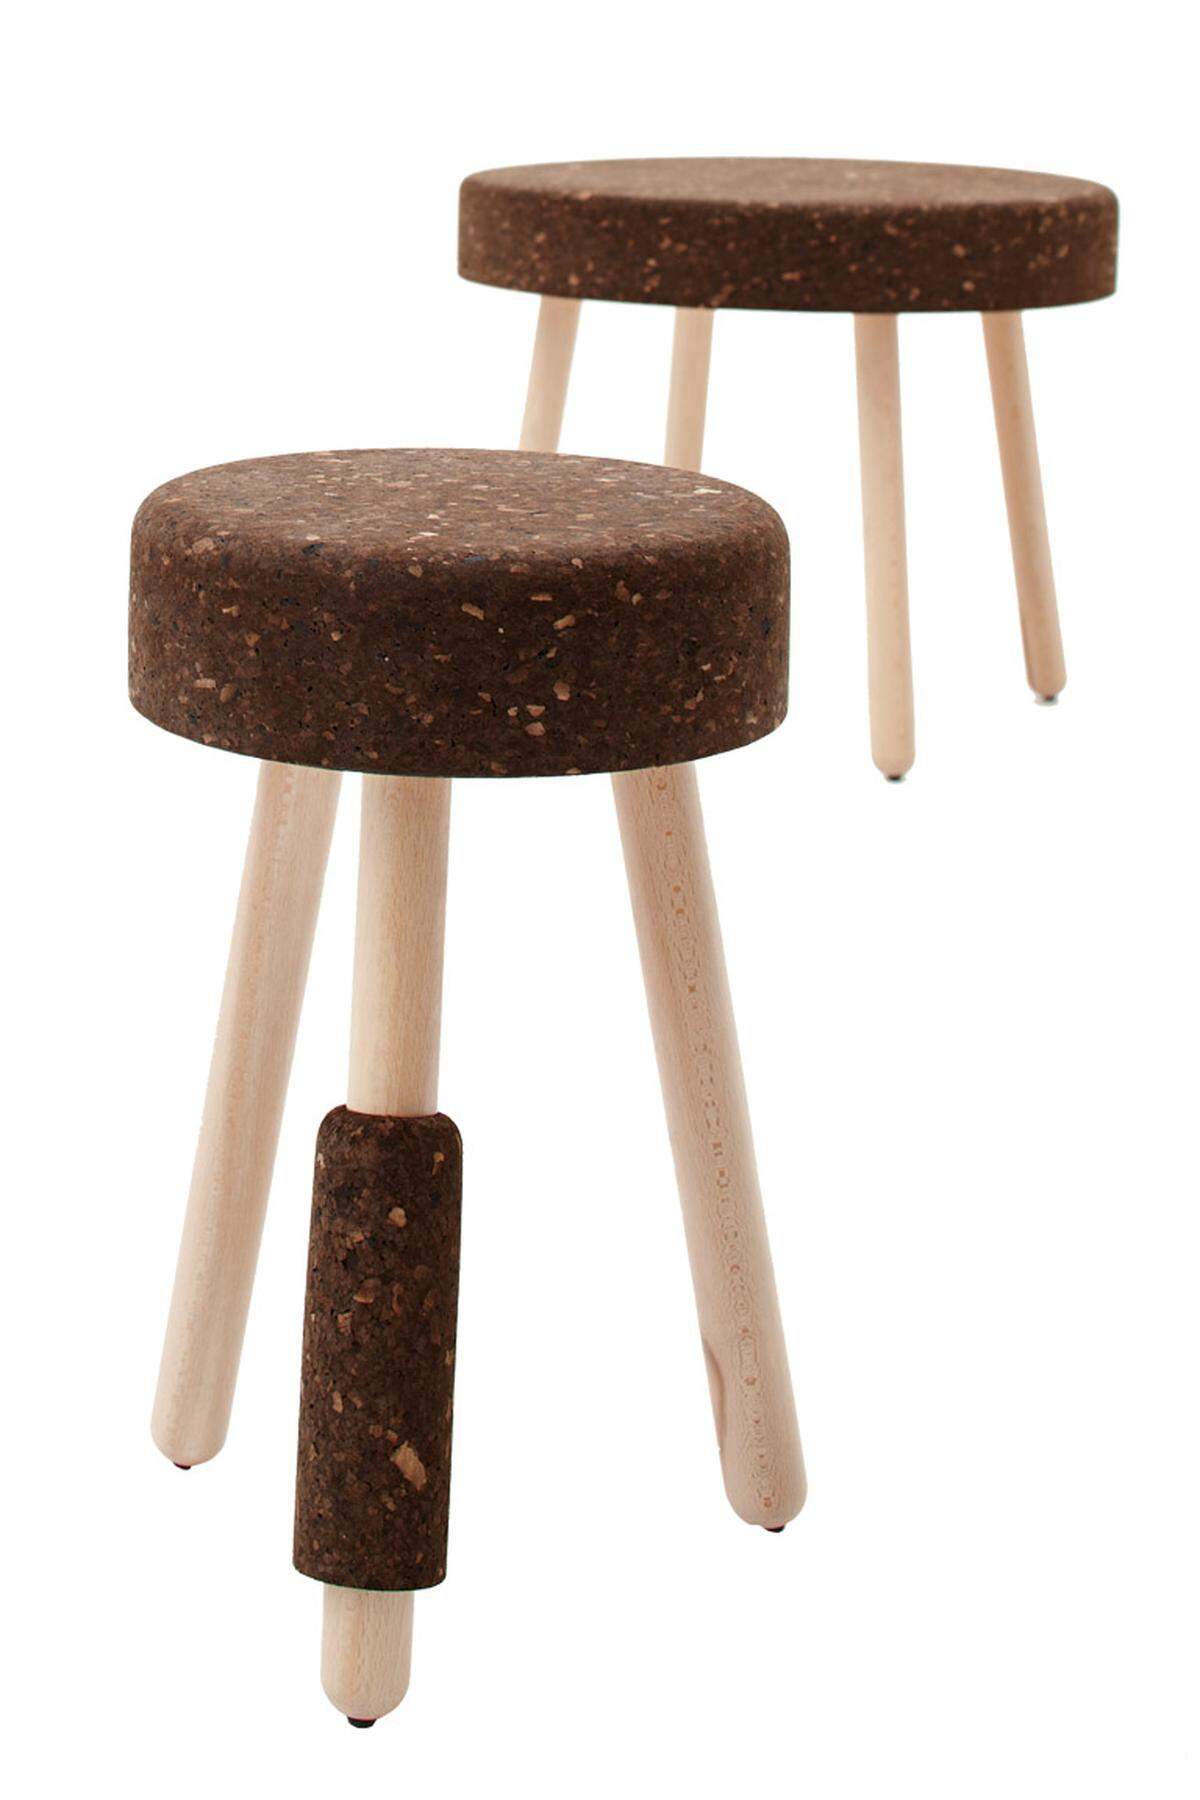 Der „continental &amp; bedlington poodle milk stool“ von wiid.design, Laurie Wiid van Heerden aus Kapstadt: ein Melkschemel.